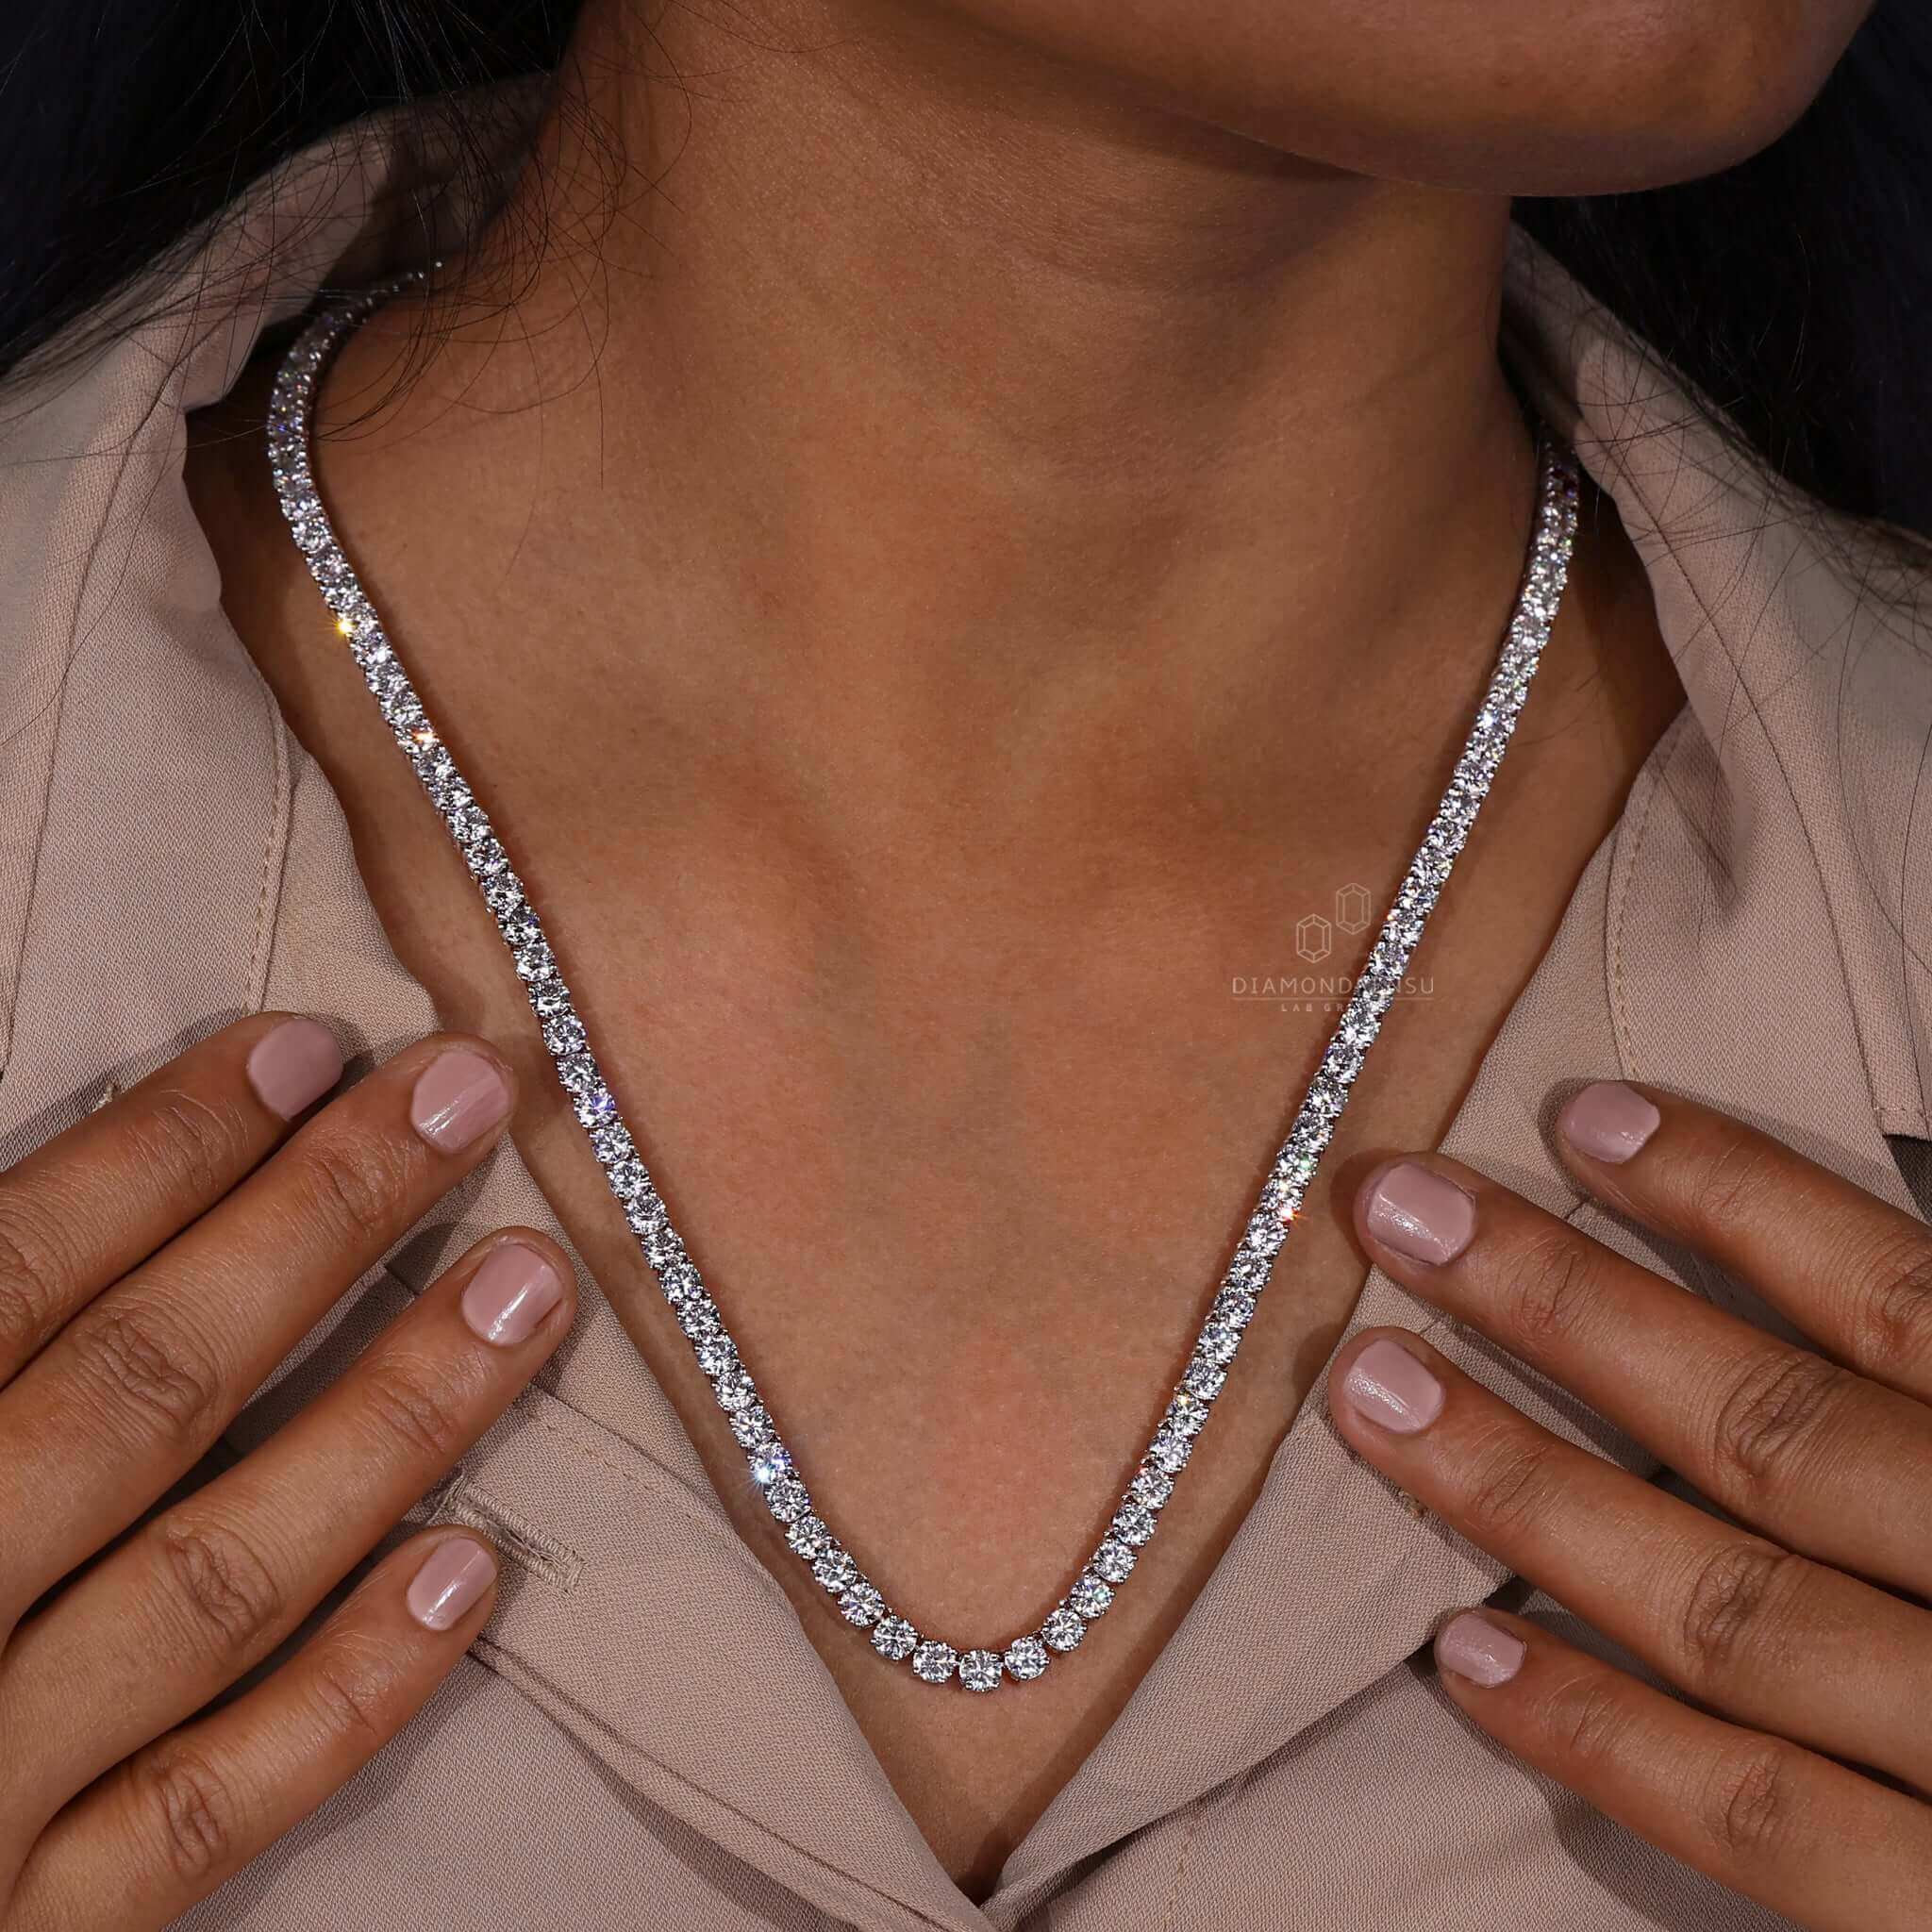 Diamond Tennis Necklace, 4.0 MM Round Lab Grown Diamond Necklace